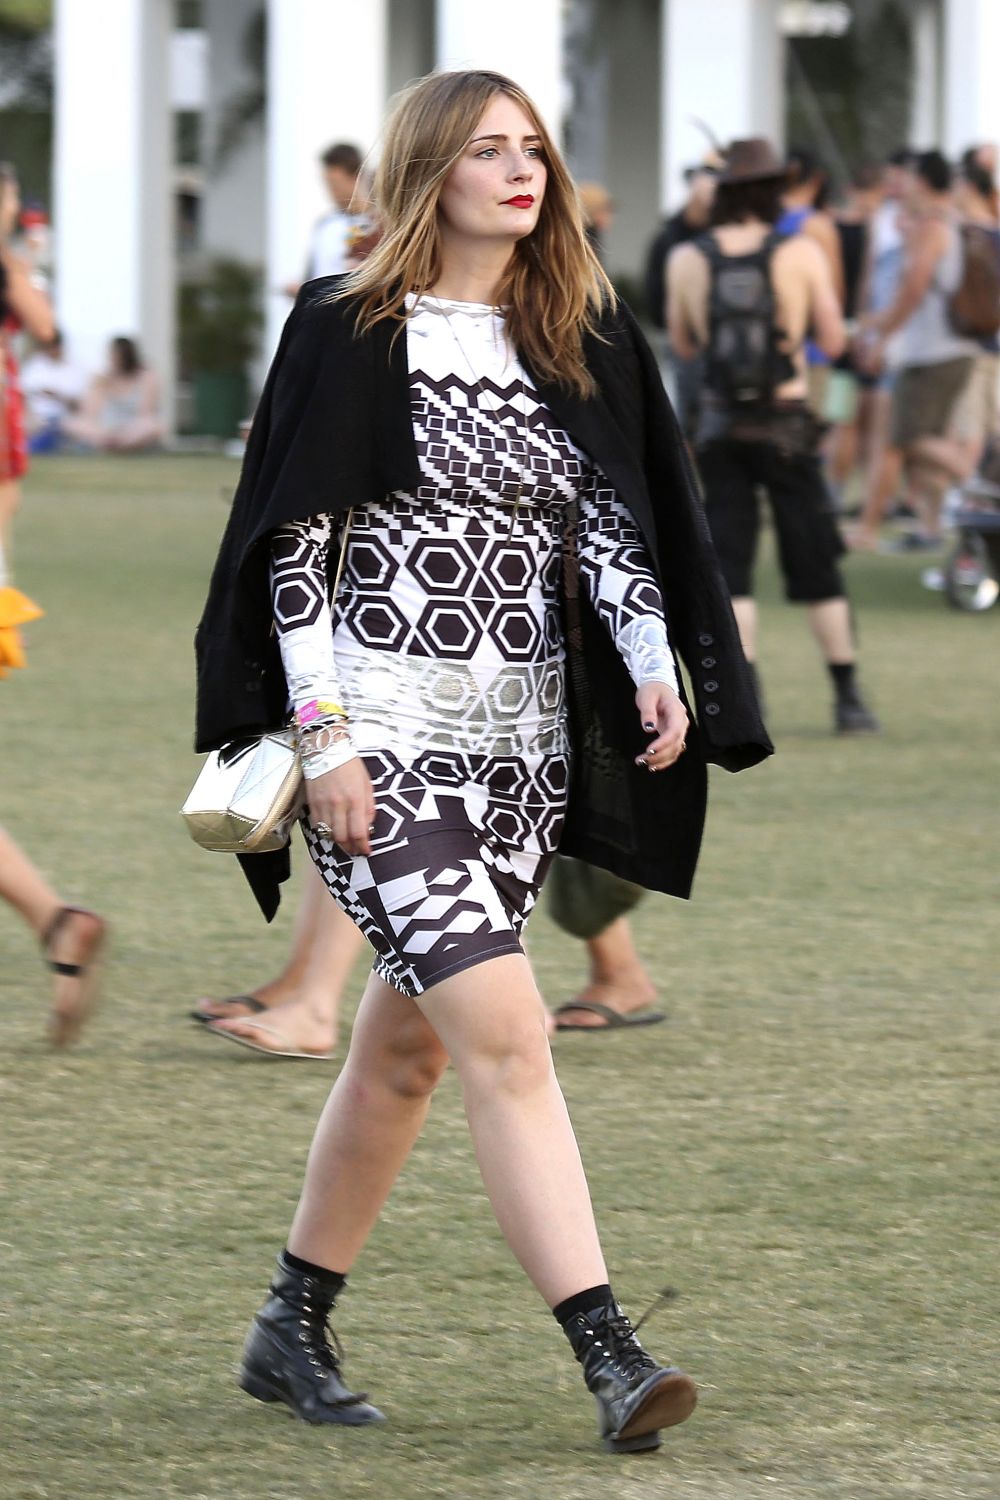 L'actrice Misha Barton à Coachella 2013